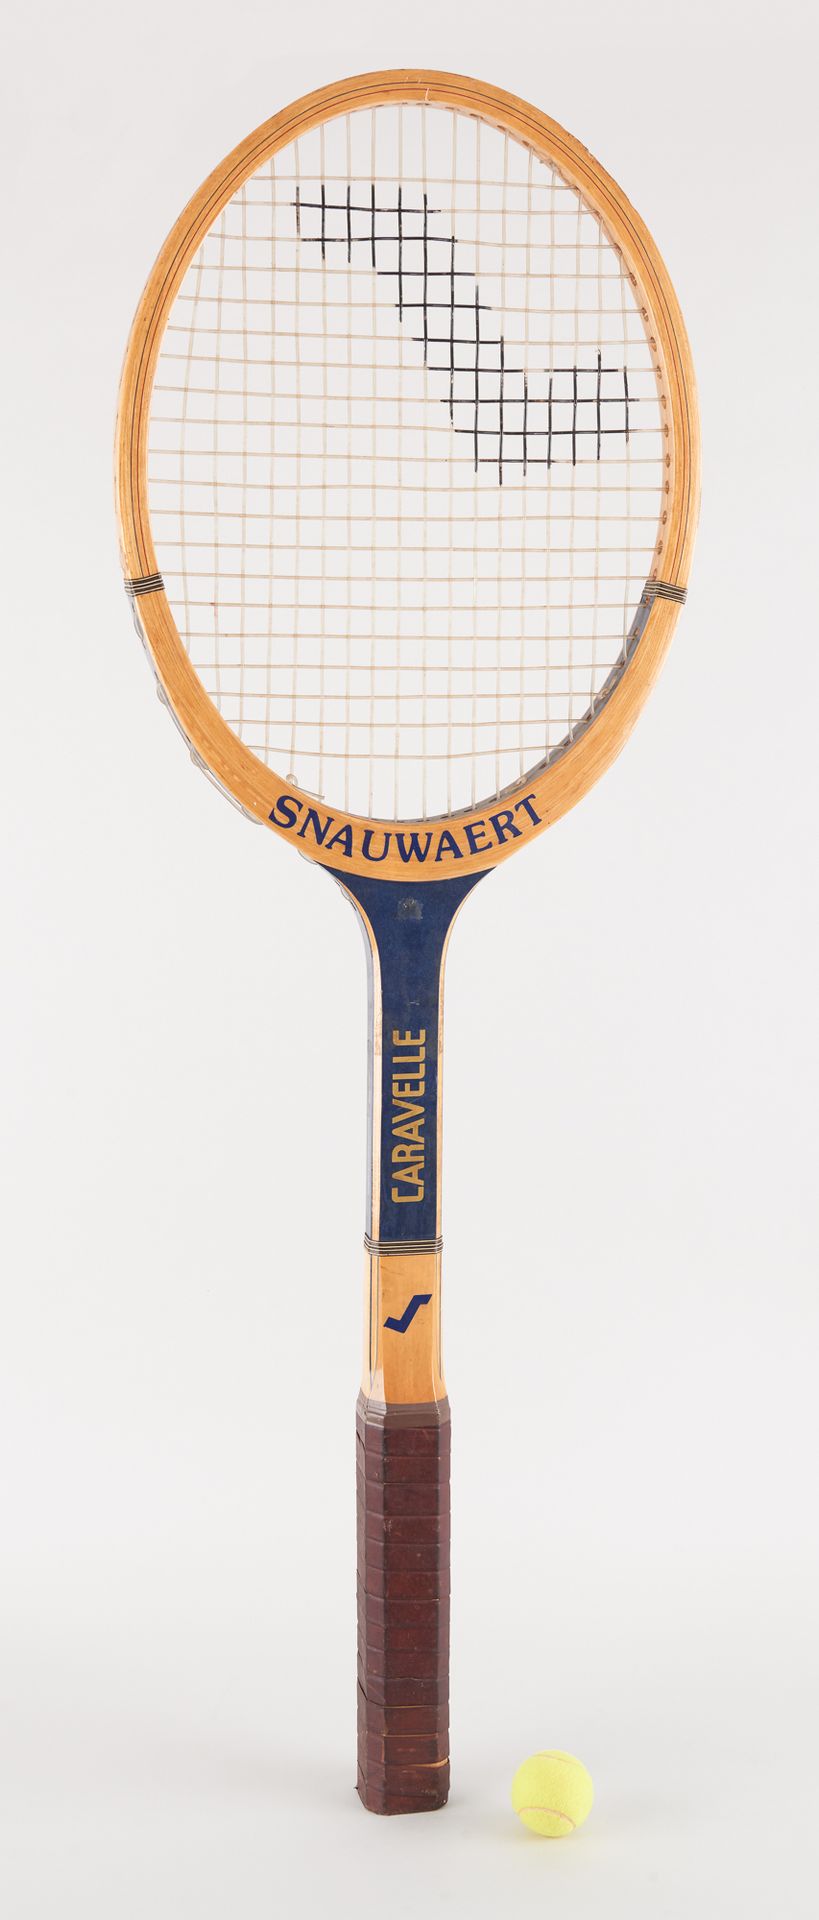 Snauwaert. 艺术品：宣传用的网球拍。

斯诺瓦特品牌，型号为 "Caravelle"。

尺寸：高：140长：46厘米。